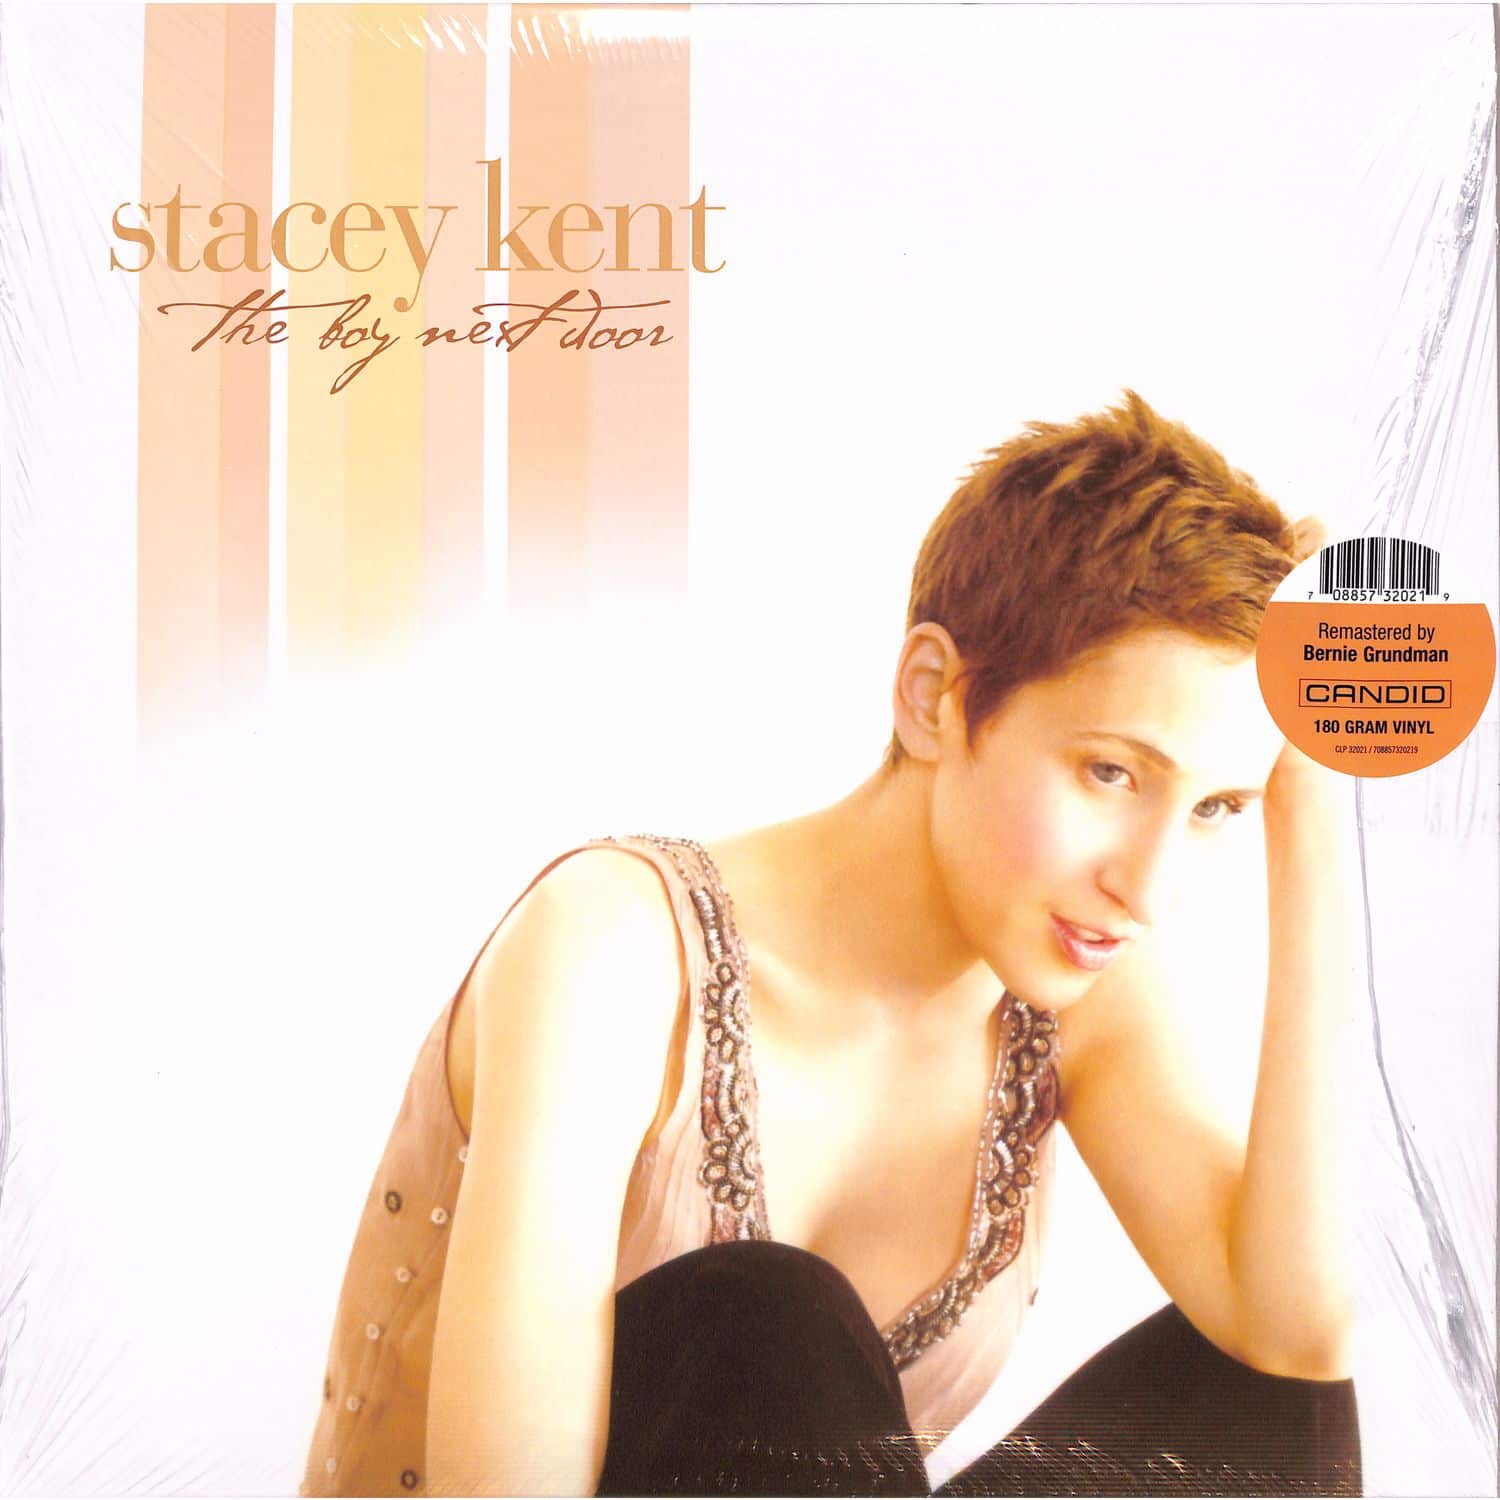  Stacey Kent - BOY NEXT DOOR 